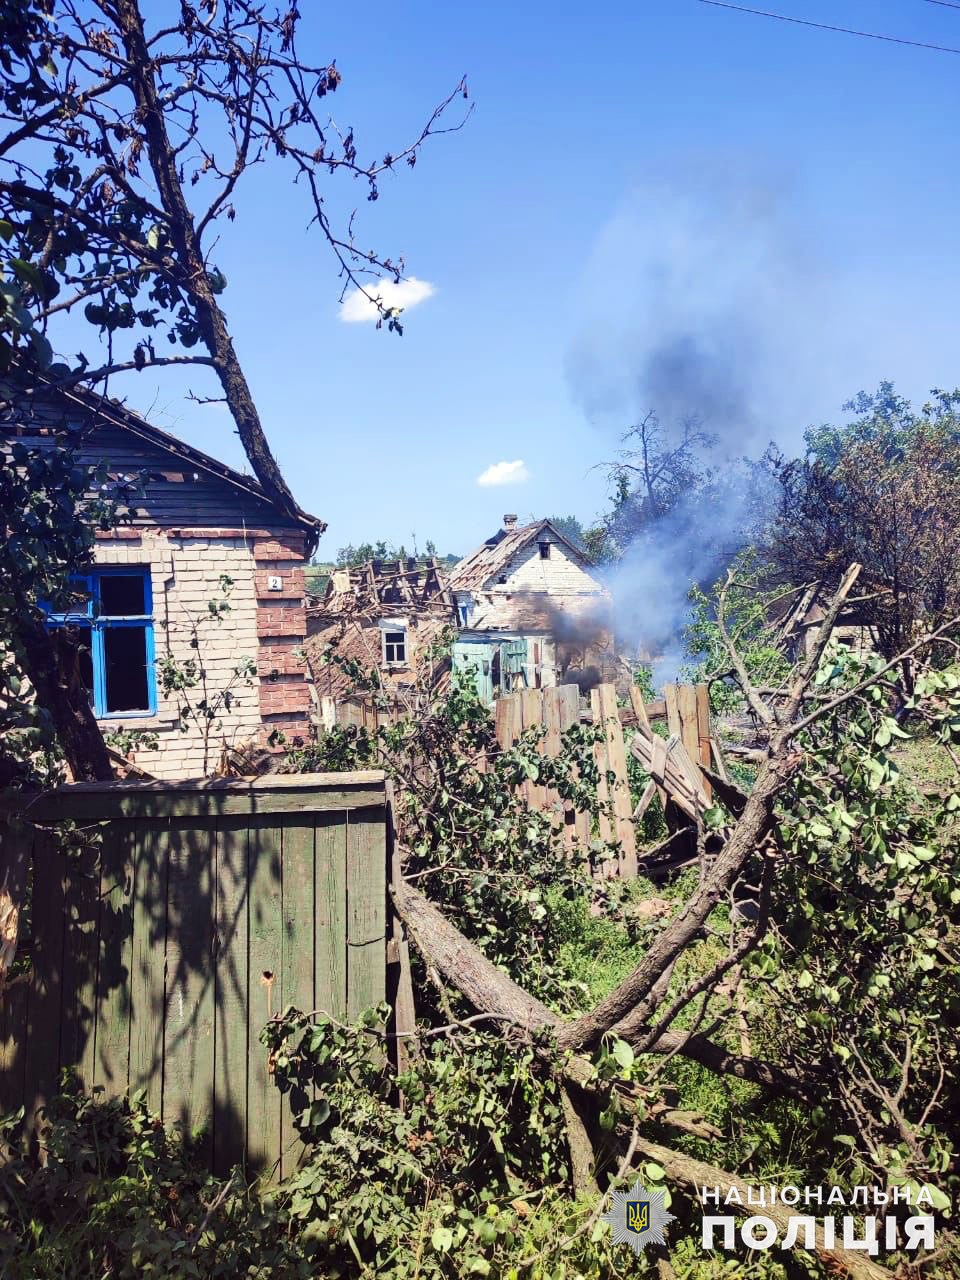 Жилой дом в Донецкой области занялся после обстрела россиян 3 июля